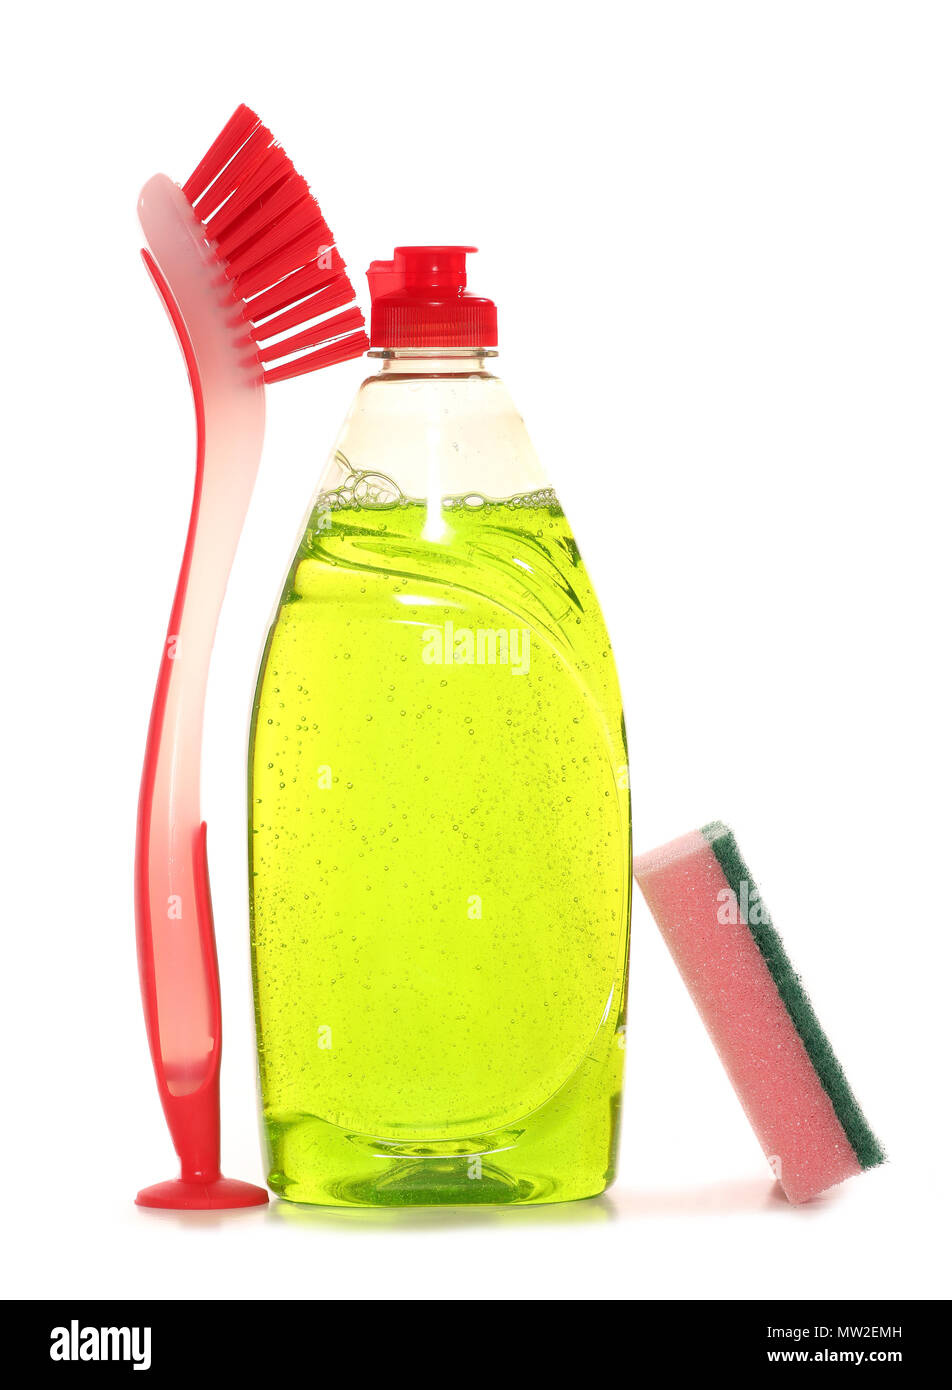 washing up liquid on white background Stock Photo